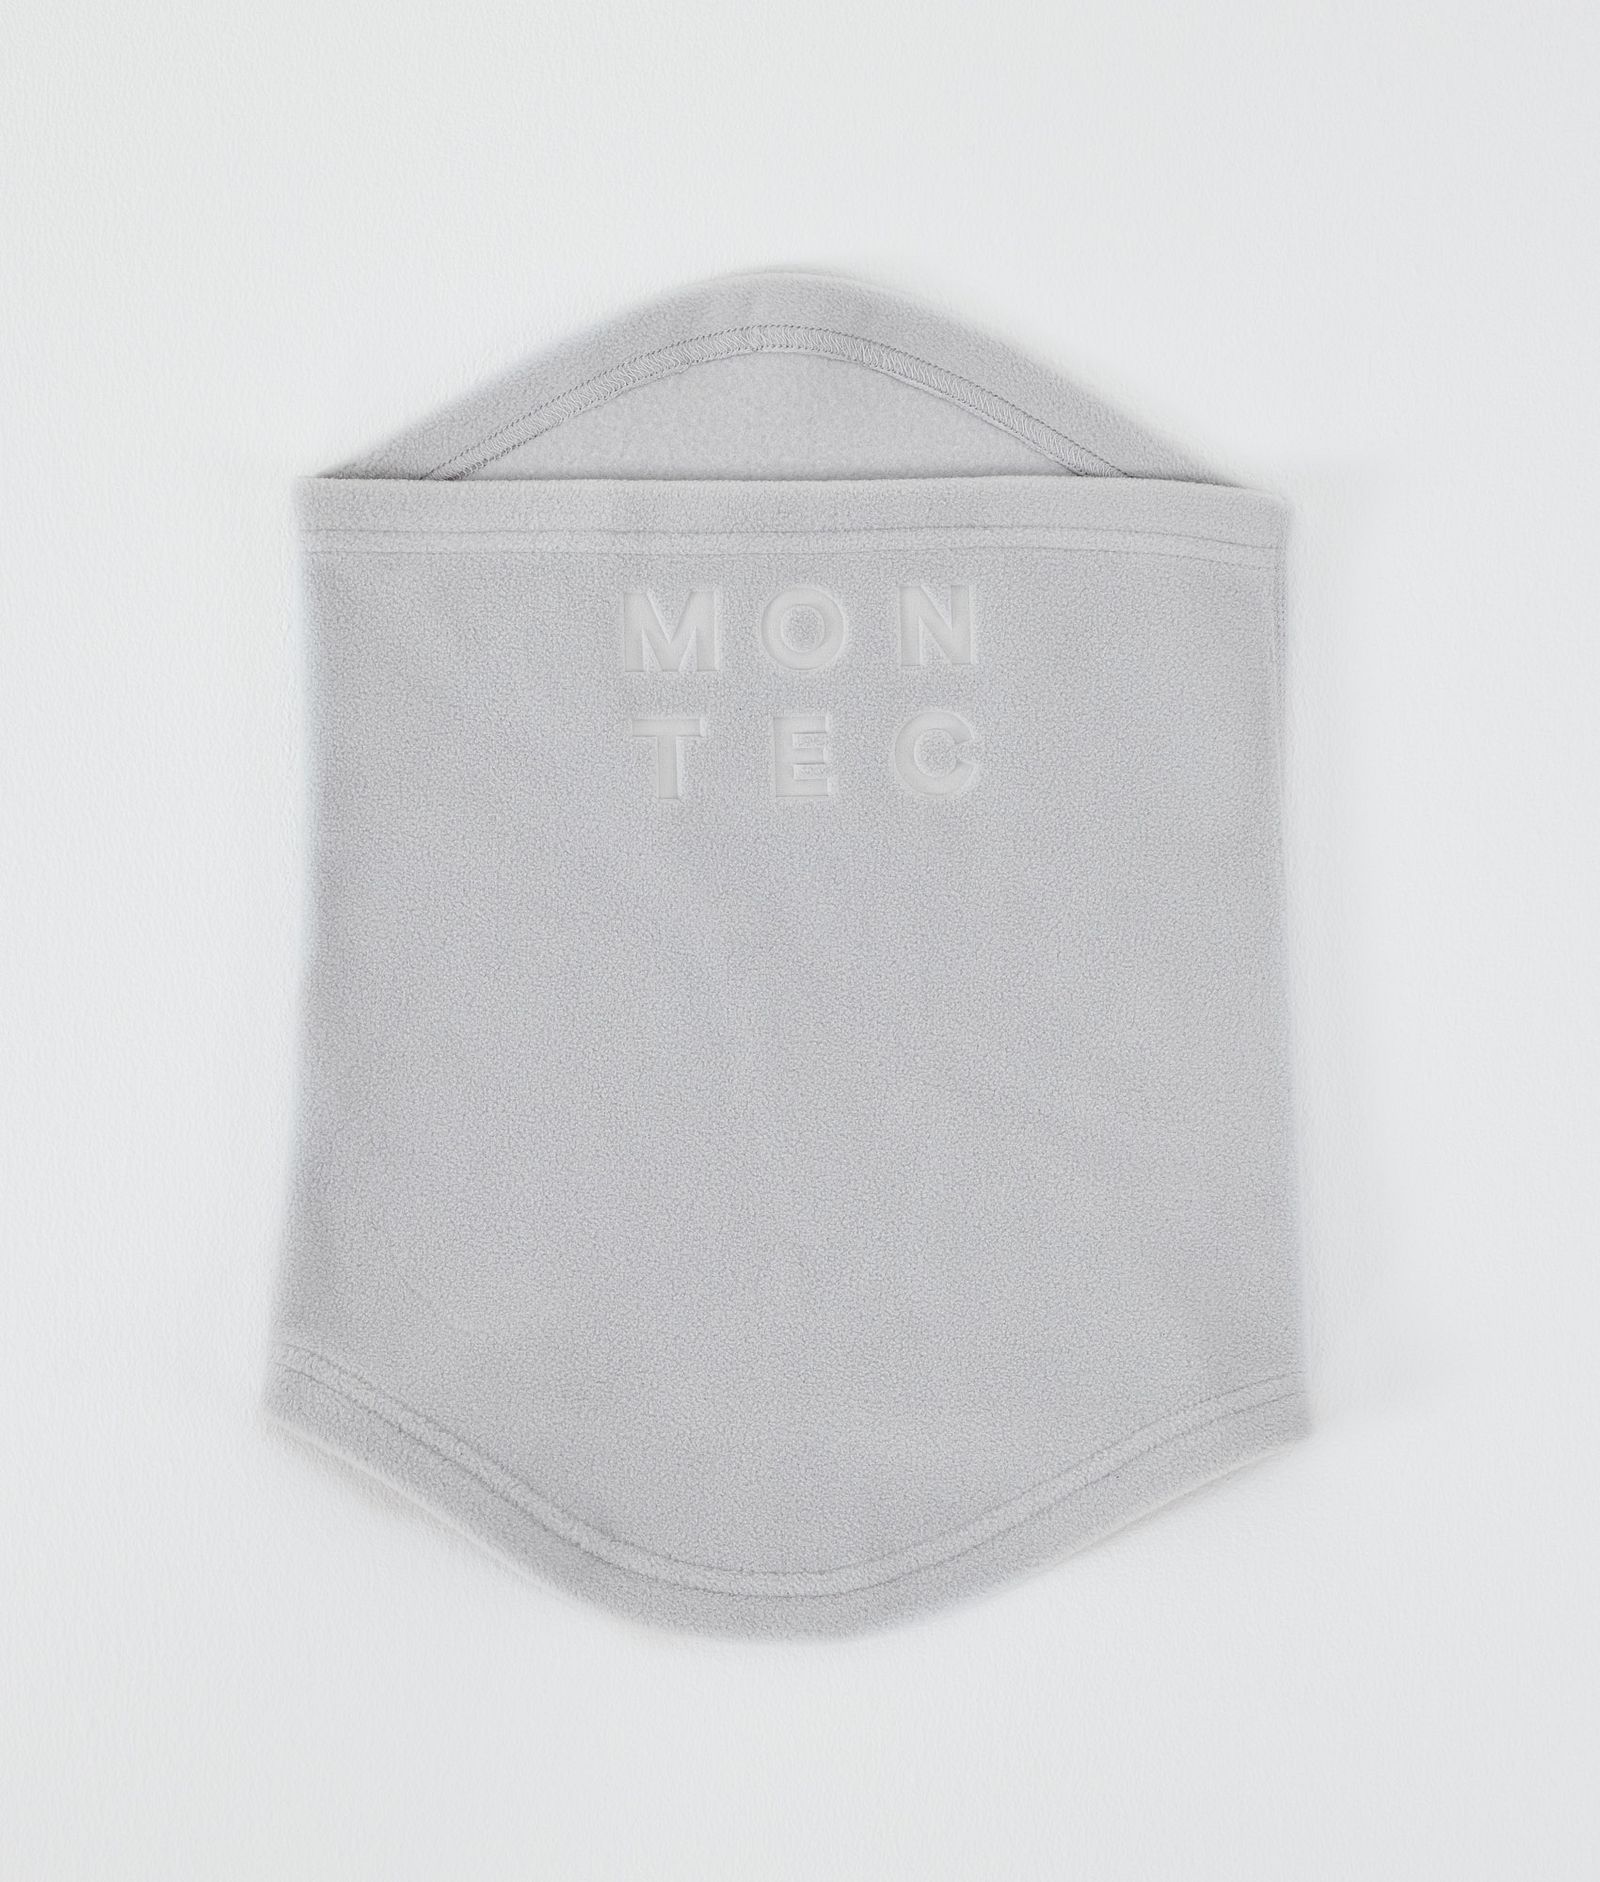 Montec Echo Tube Maska Light Grey, Obrázek 1 z 4